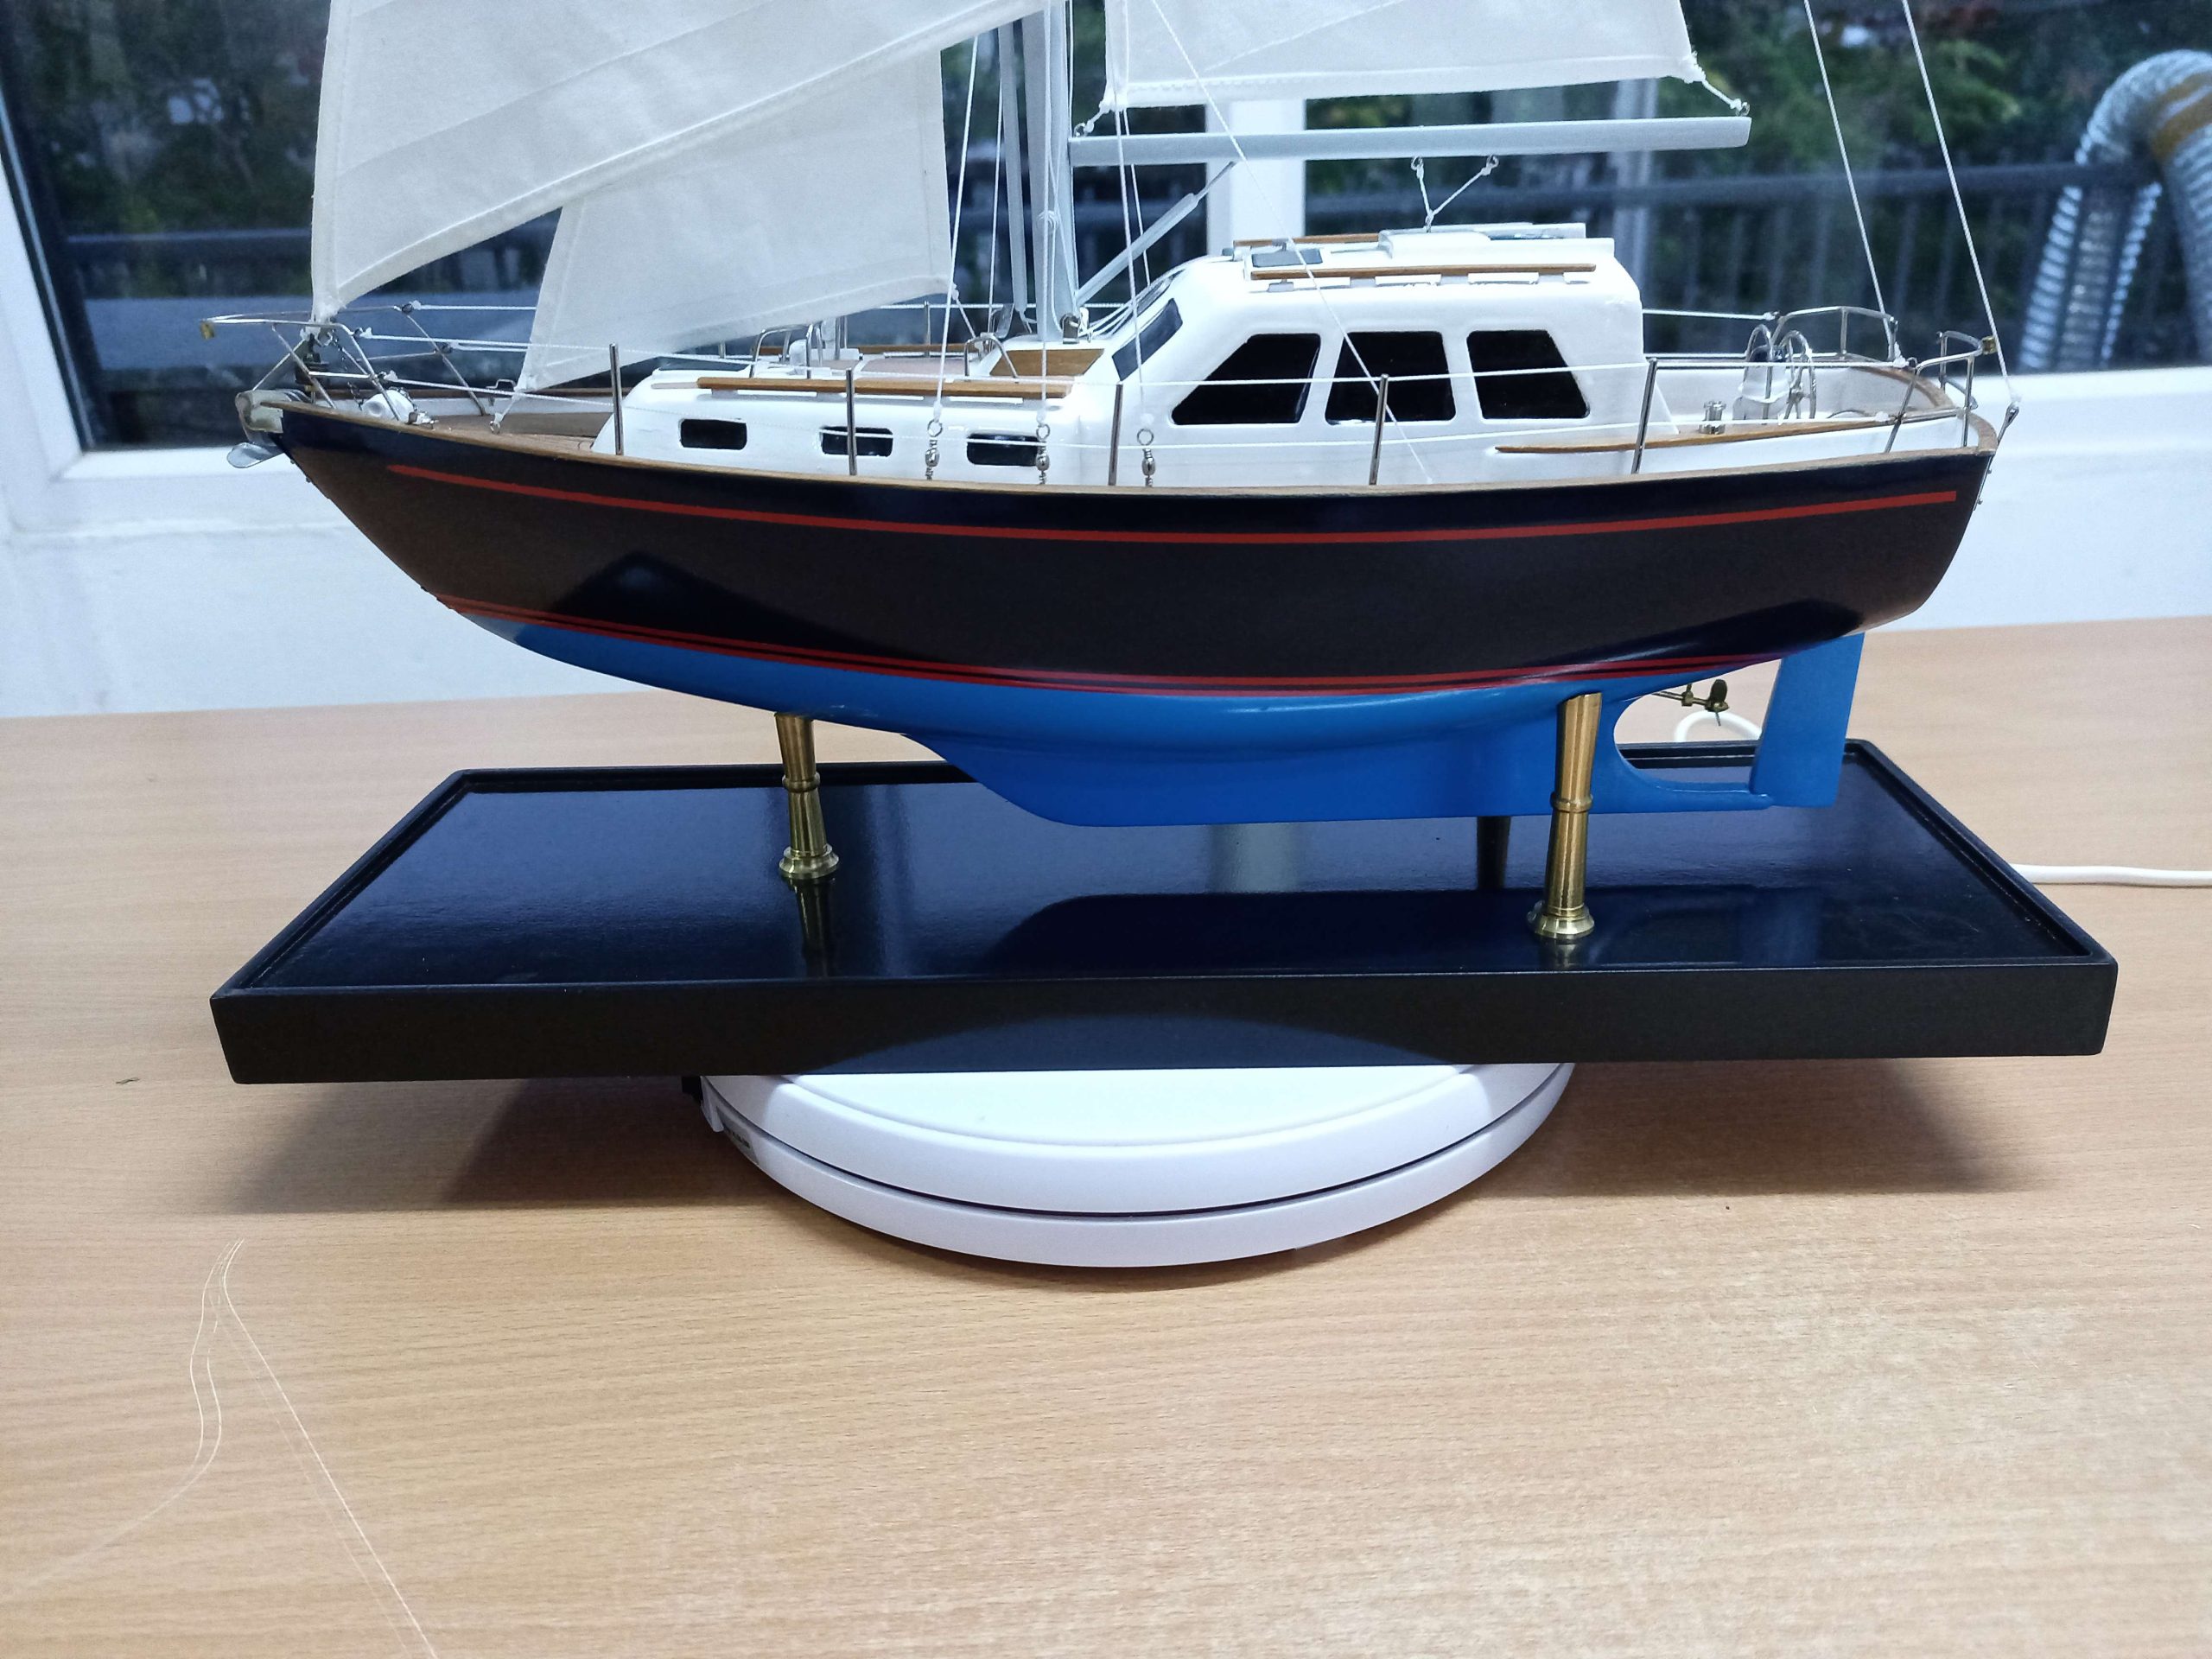 Luinga Mhor Sailing Yacht - PSM4824